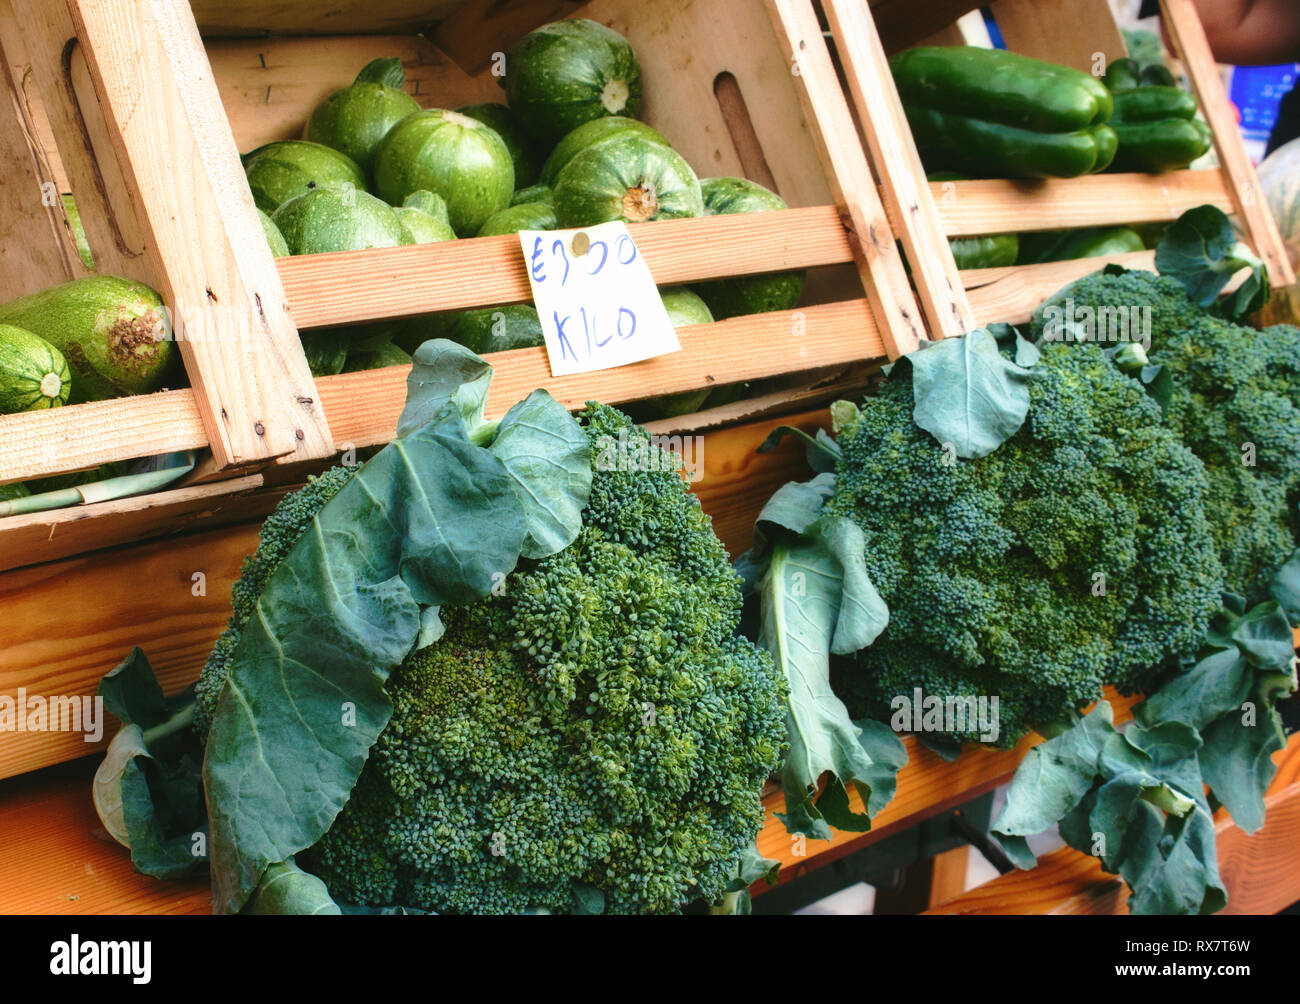 Carro de proveedores en el mercado de hortalizas variadas Foto de stock